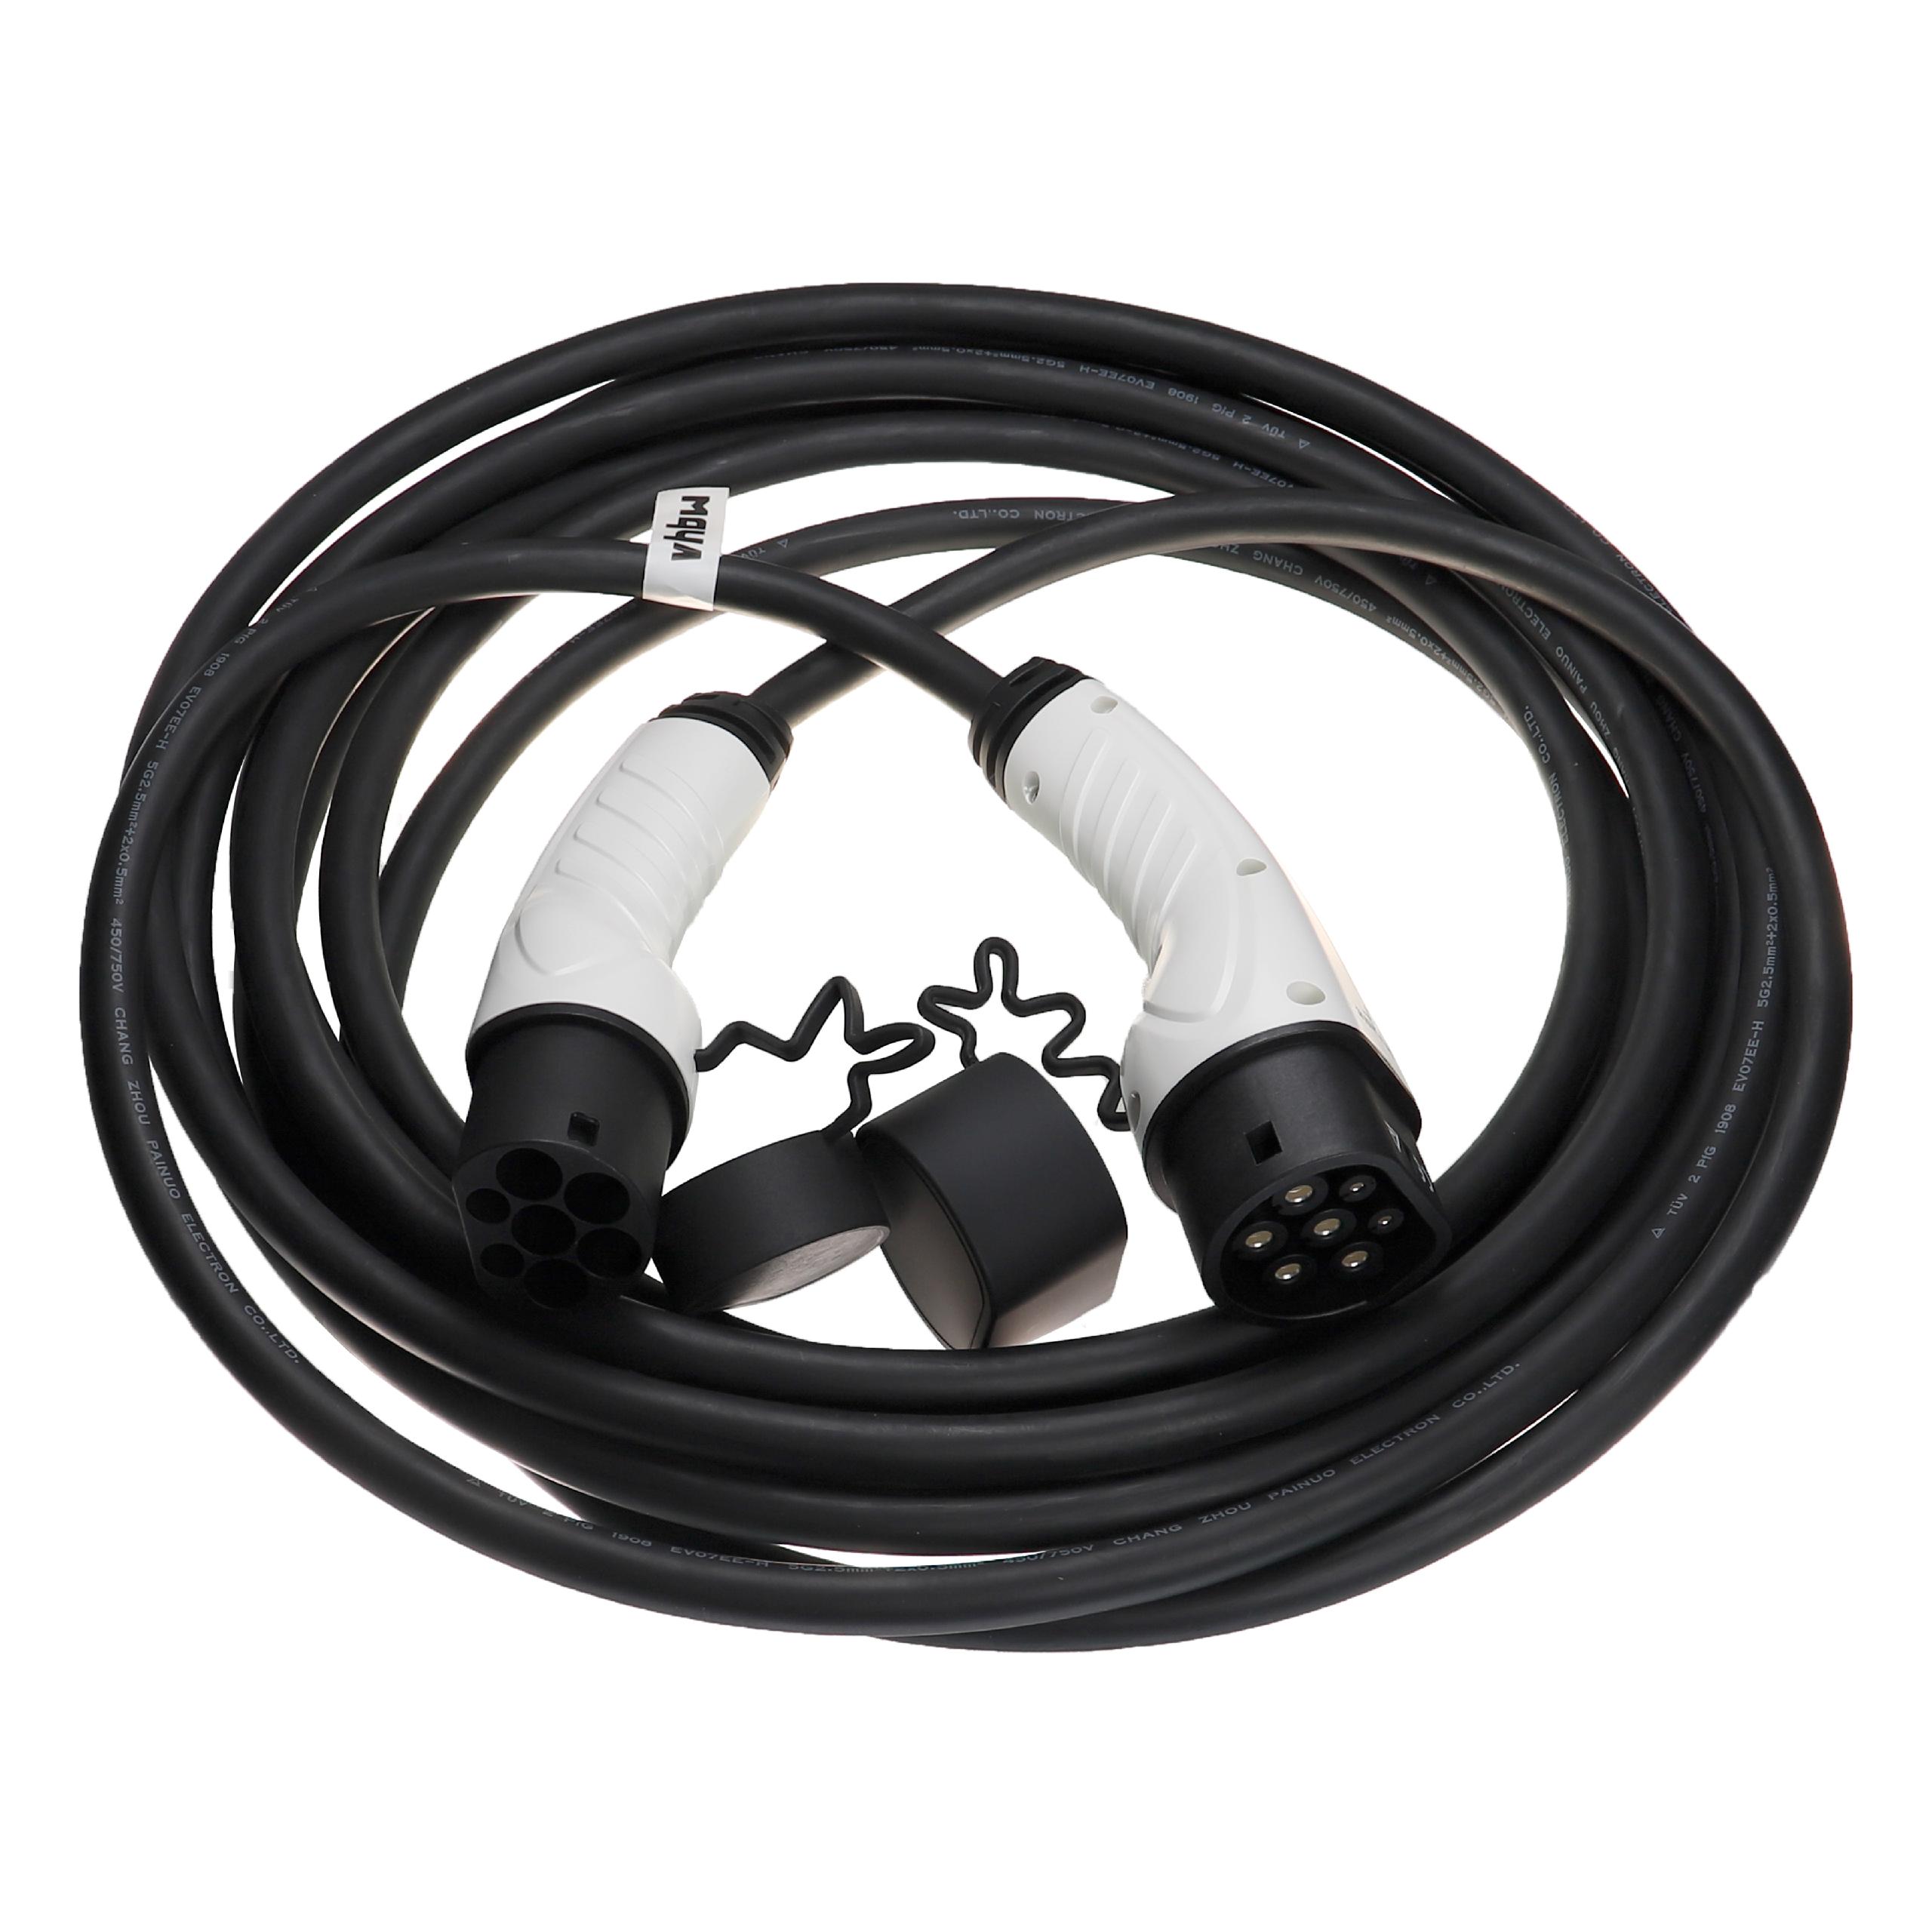 Cable de carga para coche eléctrico, híbrido enchufable - Cable tipo 2 a tipo 2, 3 fase, 16 A, 11 kW, 10 m